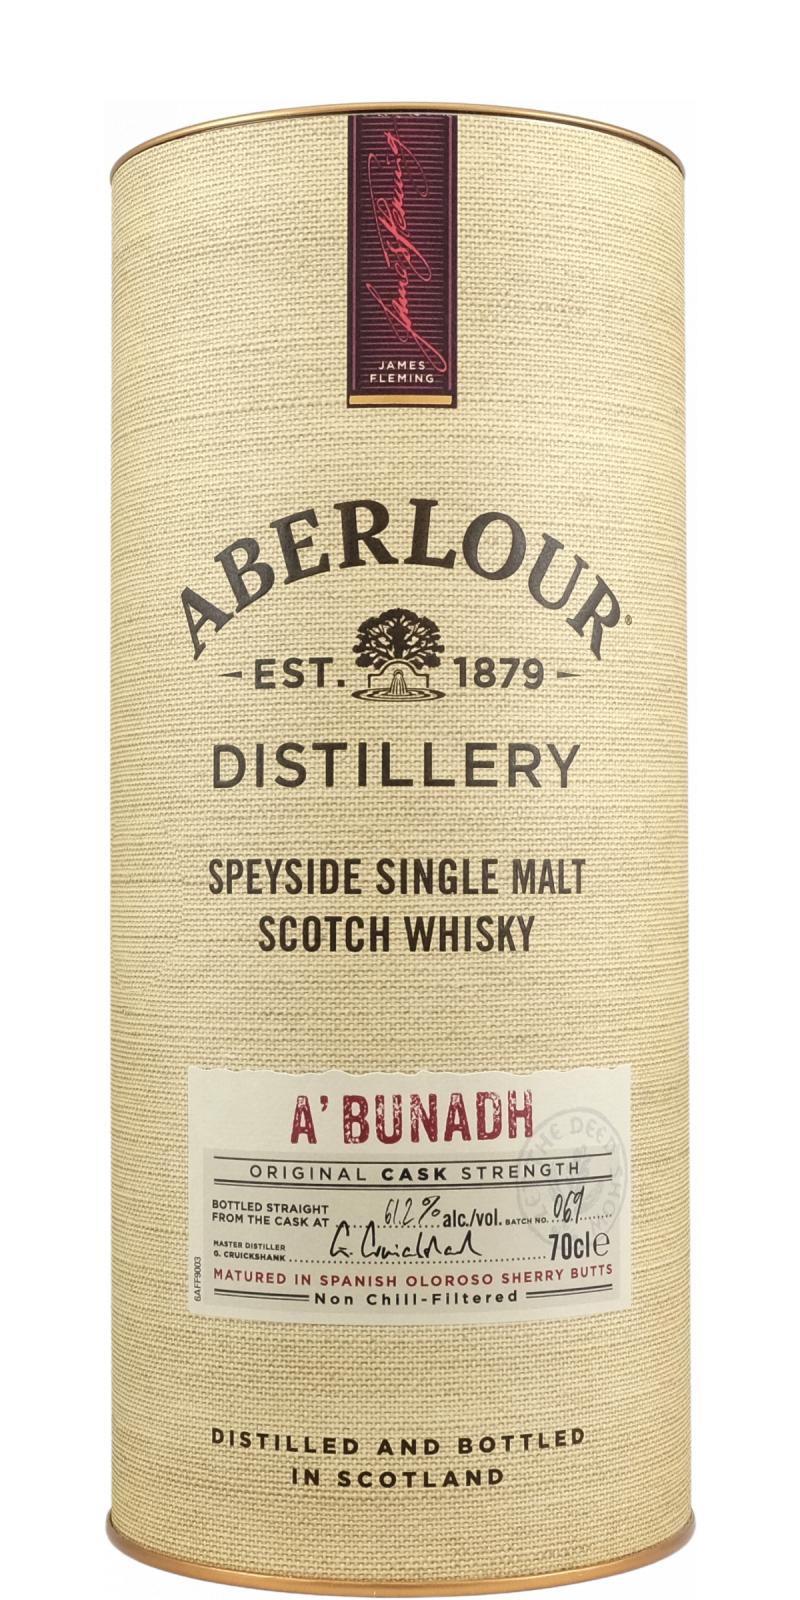 Aberlour A'bunadh batch #69